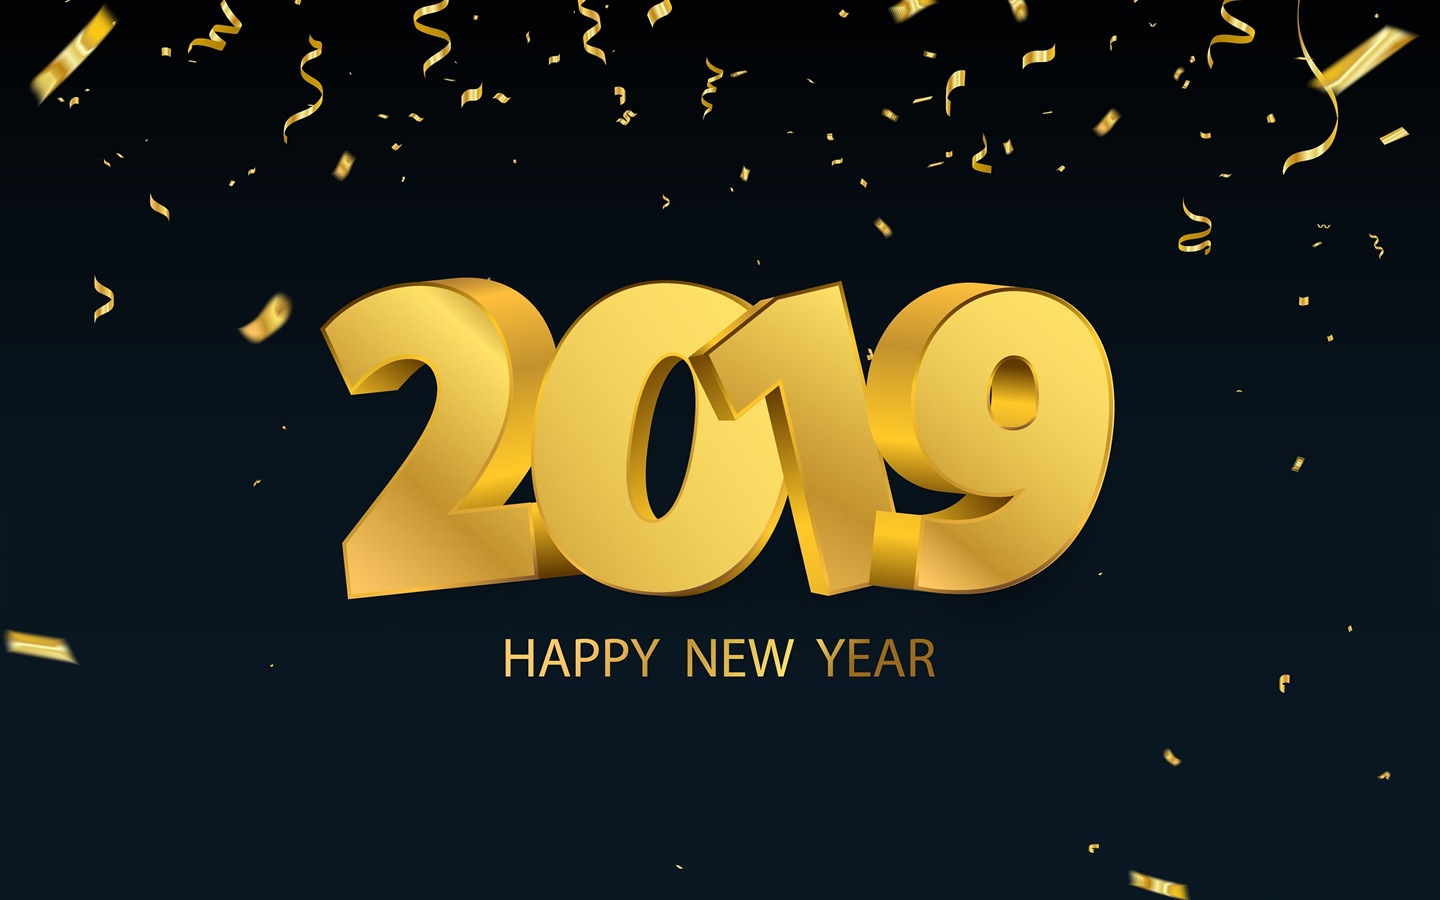 Feliz año nuevo 2019 HD wallpapers #13 - 1440x900